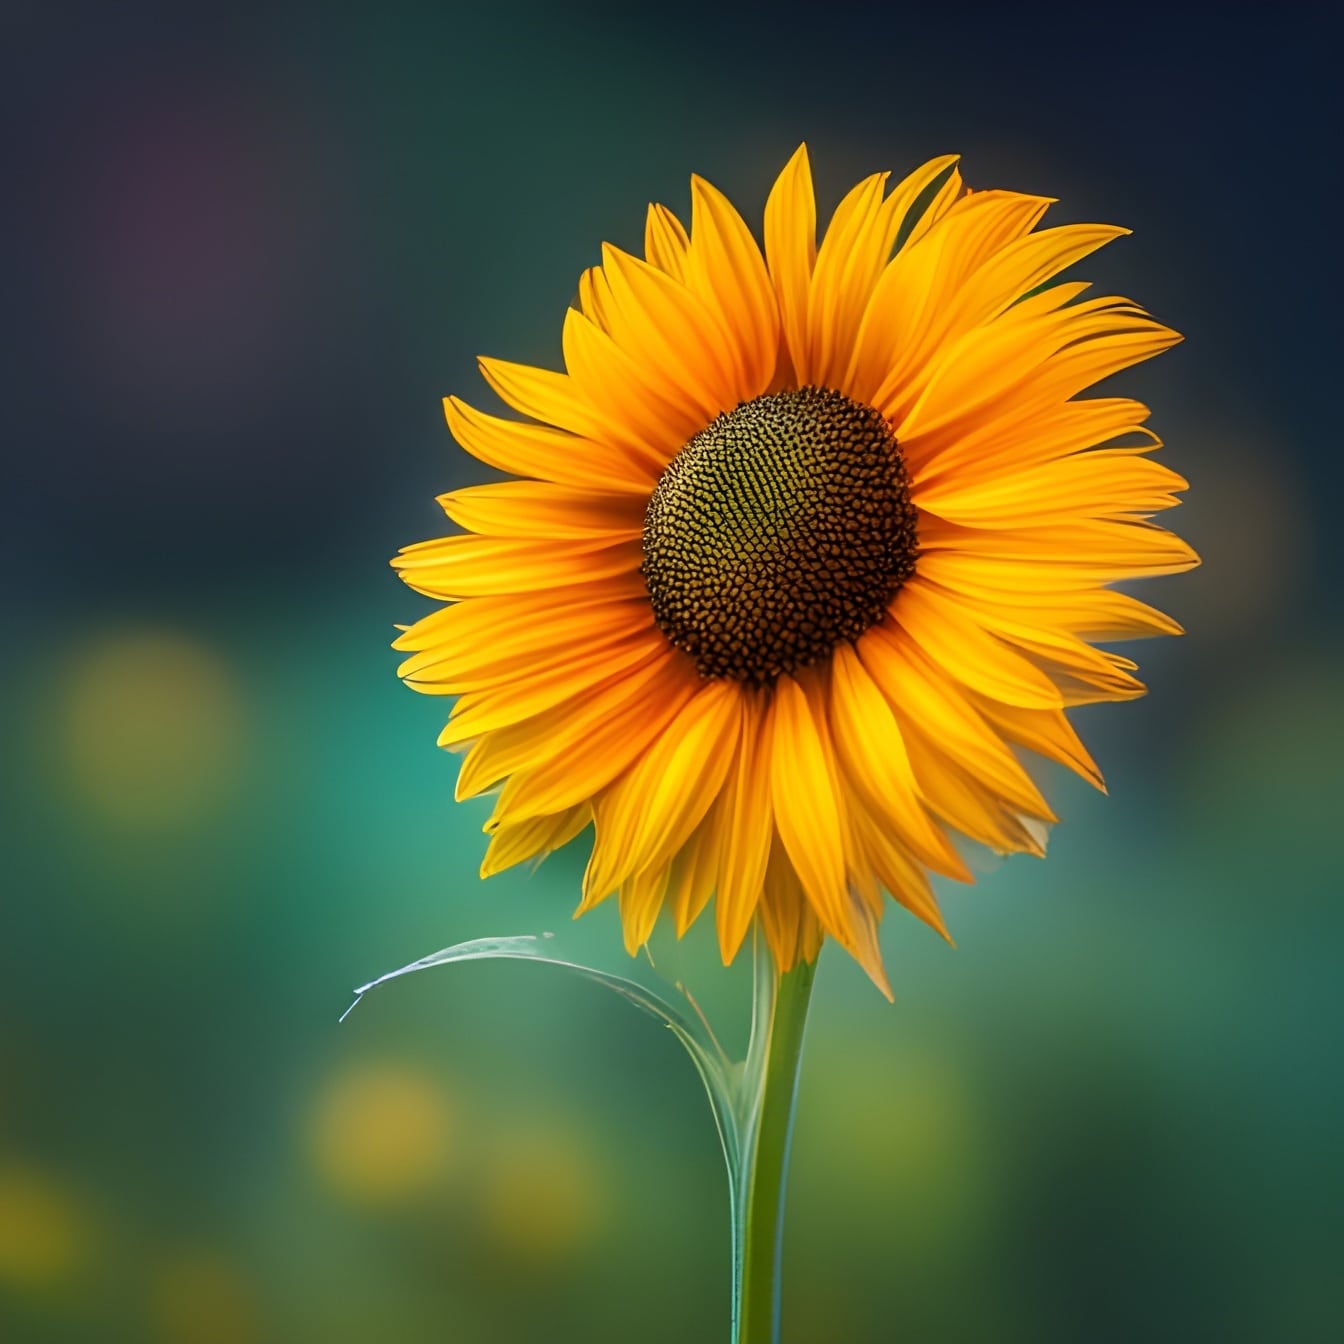 Floarea-soarelui cu petale galbene portocalii Ilustrație grafică de aproape – arta inteligenței artificiale